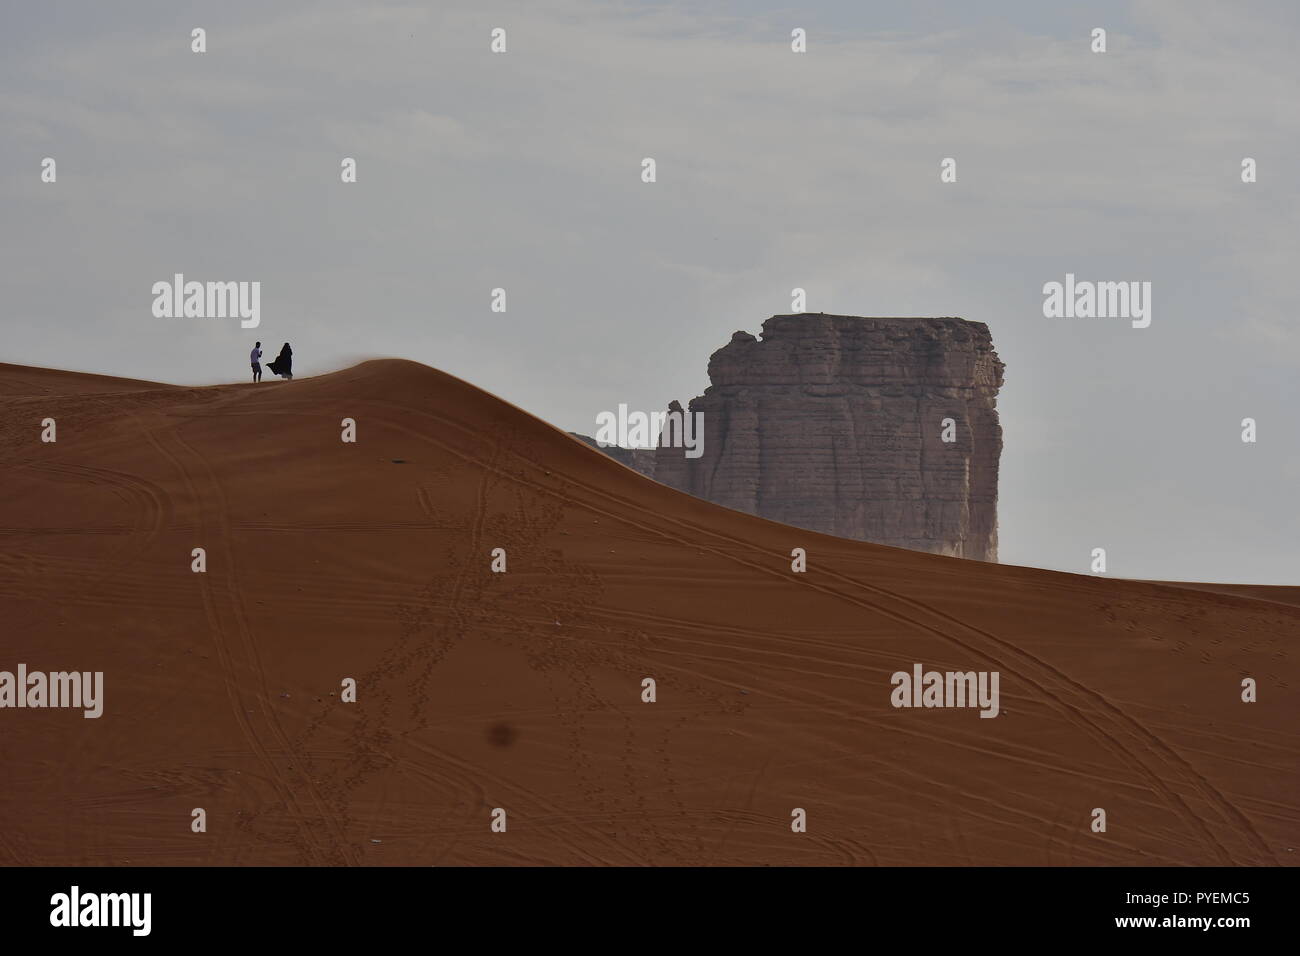 La solitude dans les zones désertiques Banque D'Images